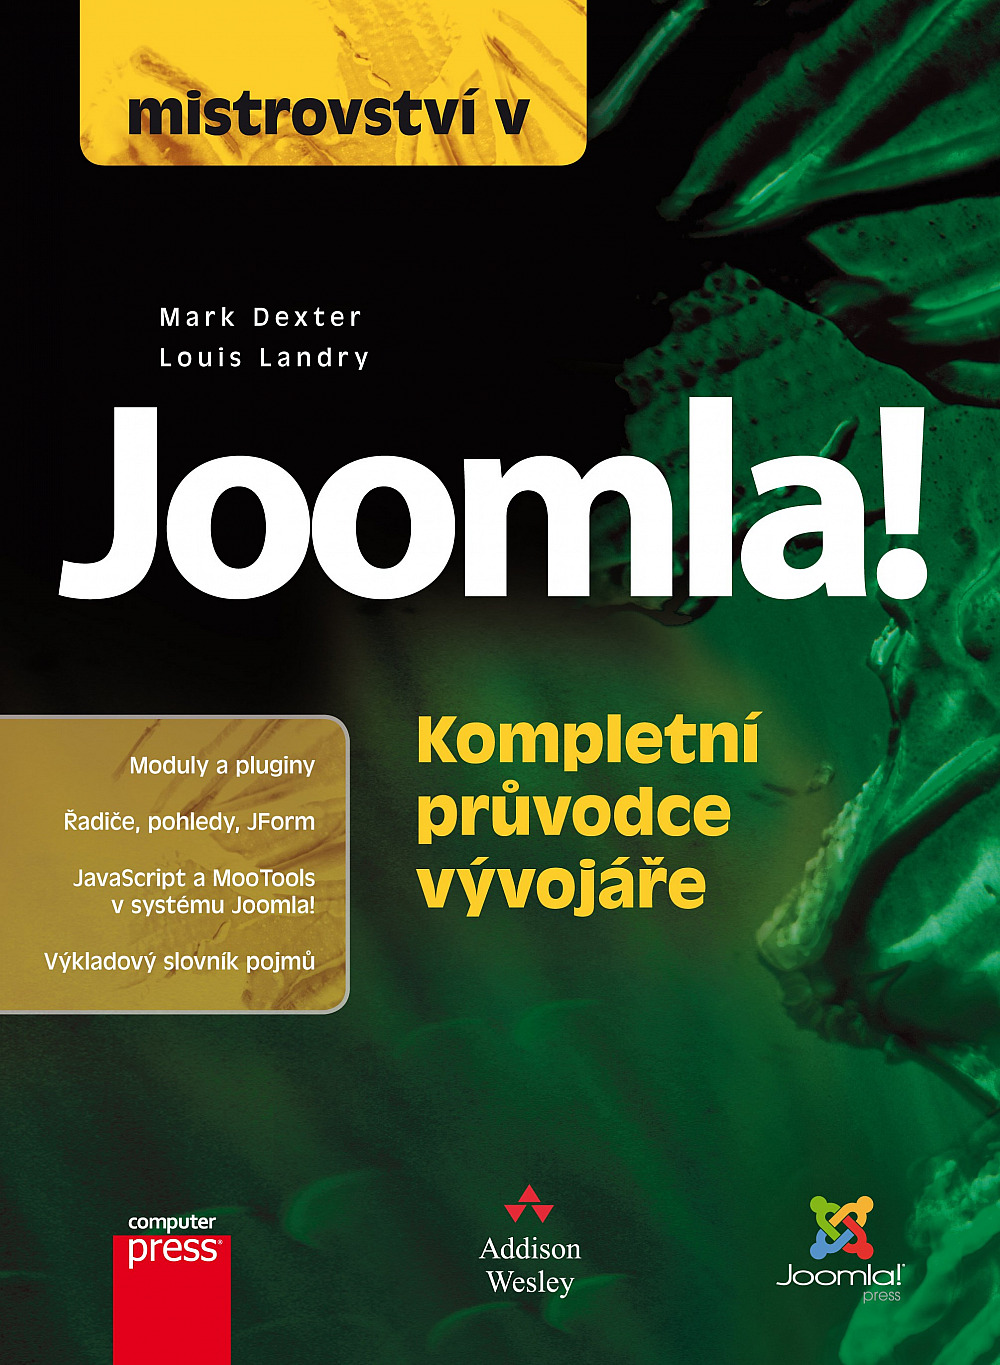 Mistrovství v Joomla - kompletní průvodce vývojáře